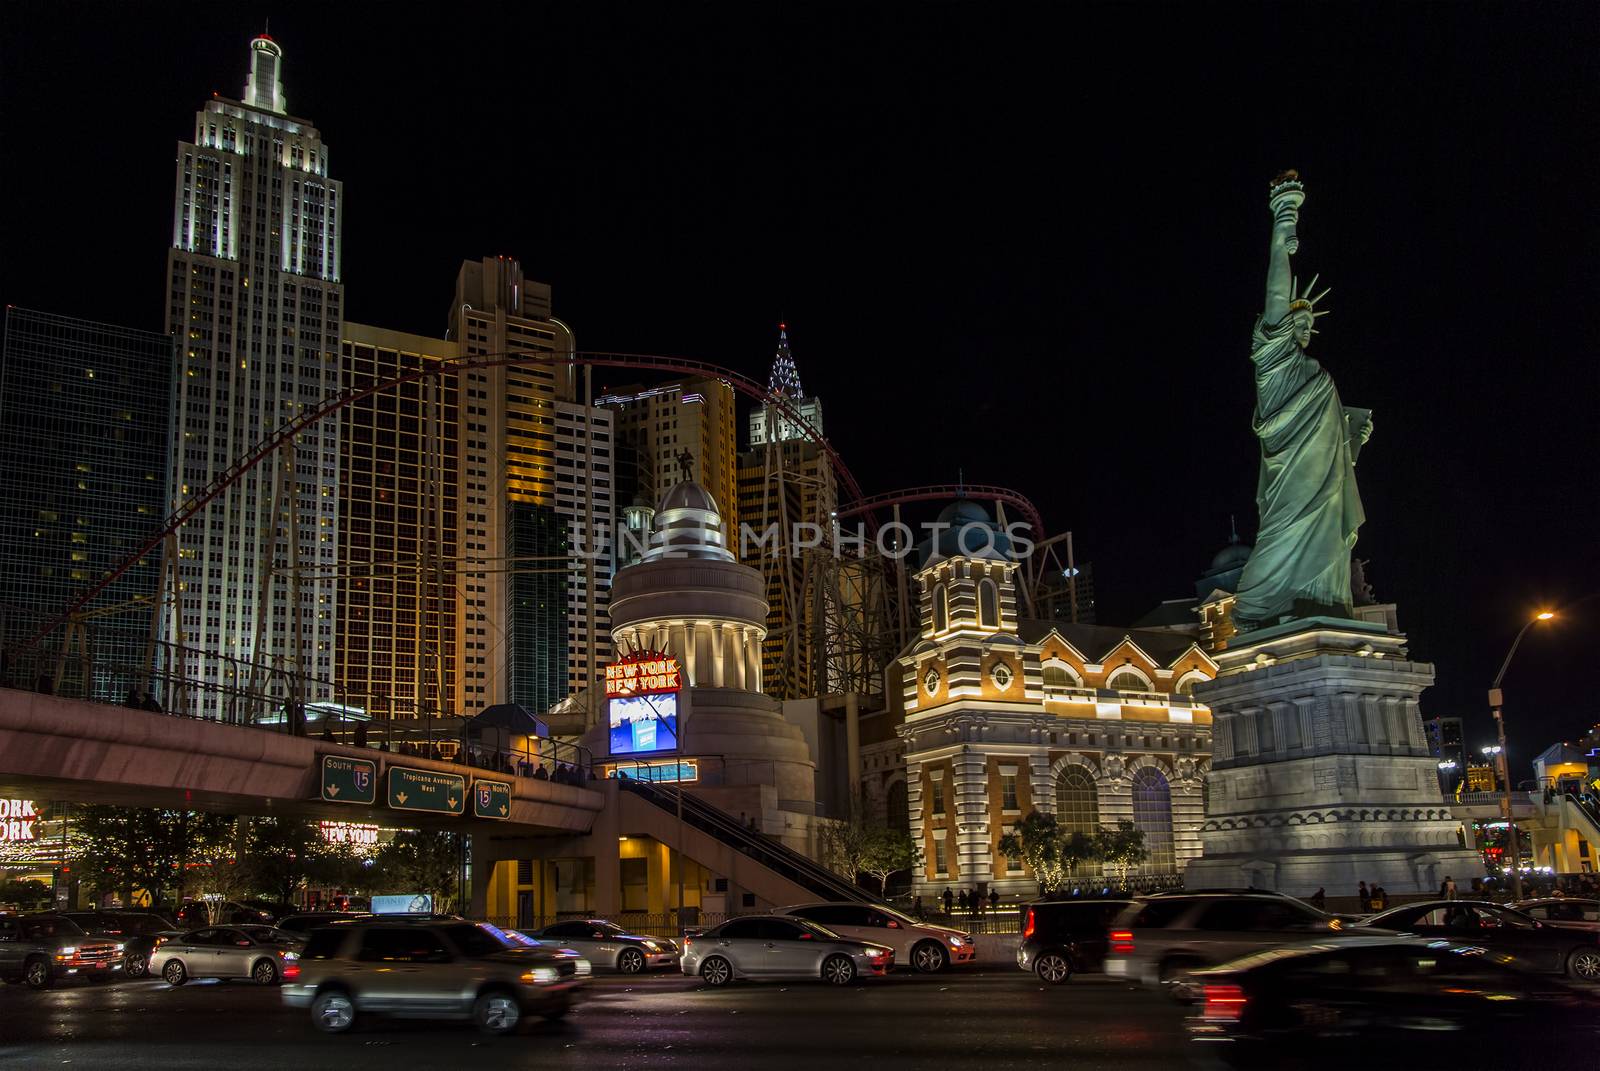 LAS VEGAS NV/USA - DECEMBER 24:  The Las Vegas Strip on Christmas Eve with New York, New York Hotel and Casino. December 24, 2014 in Las Vegas, NV, USA. 